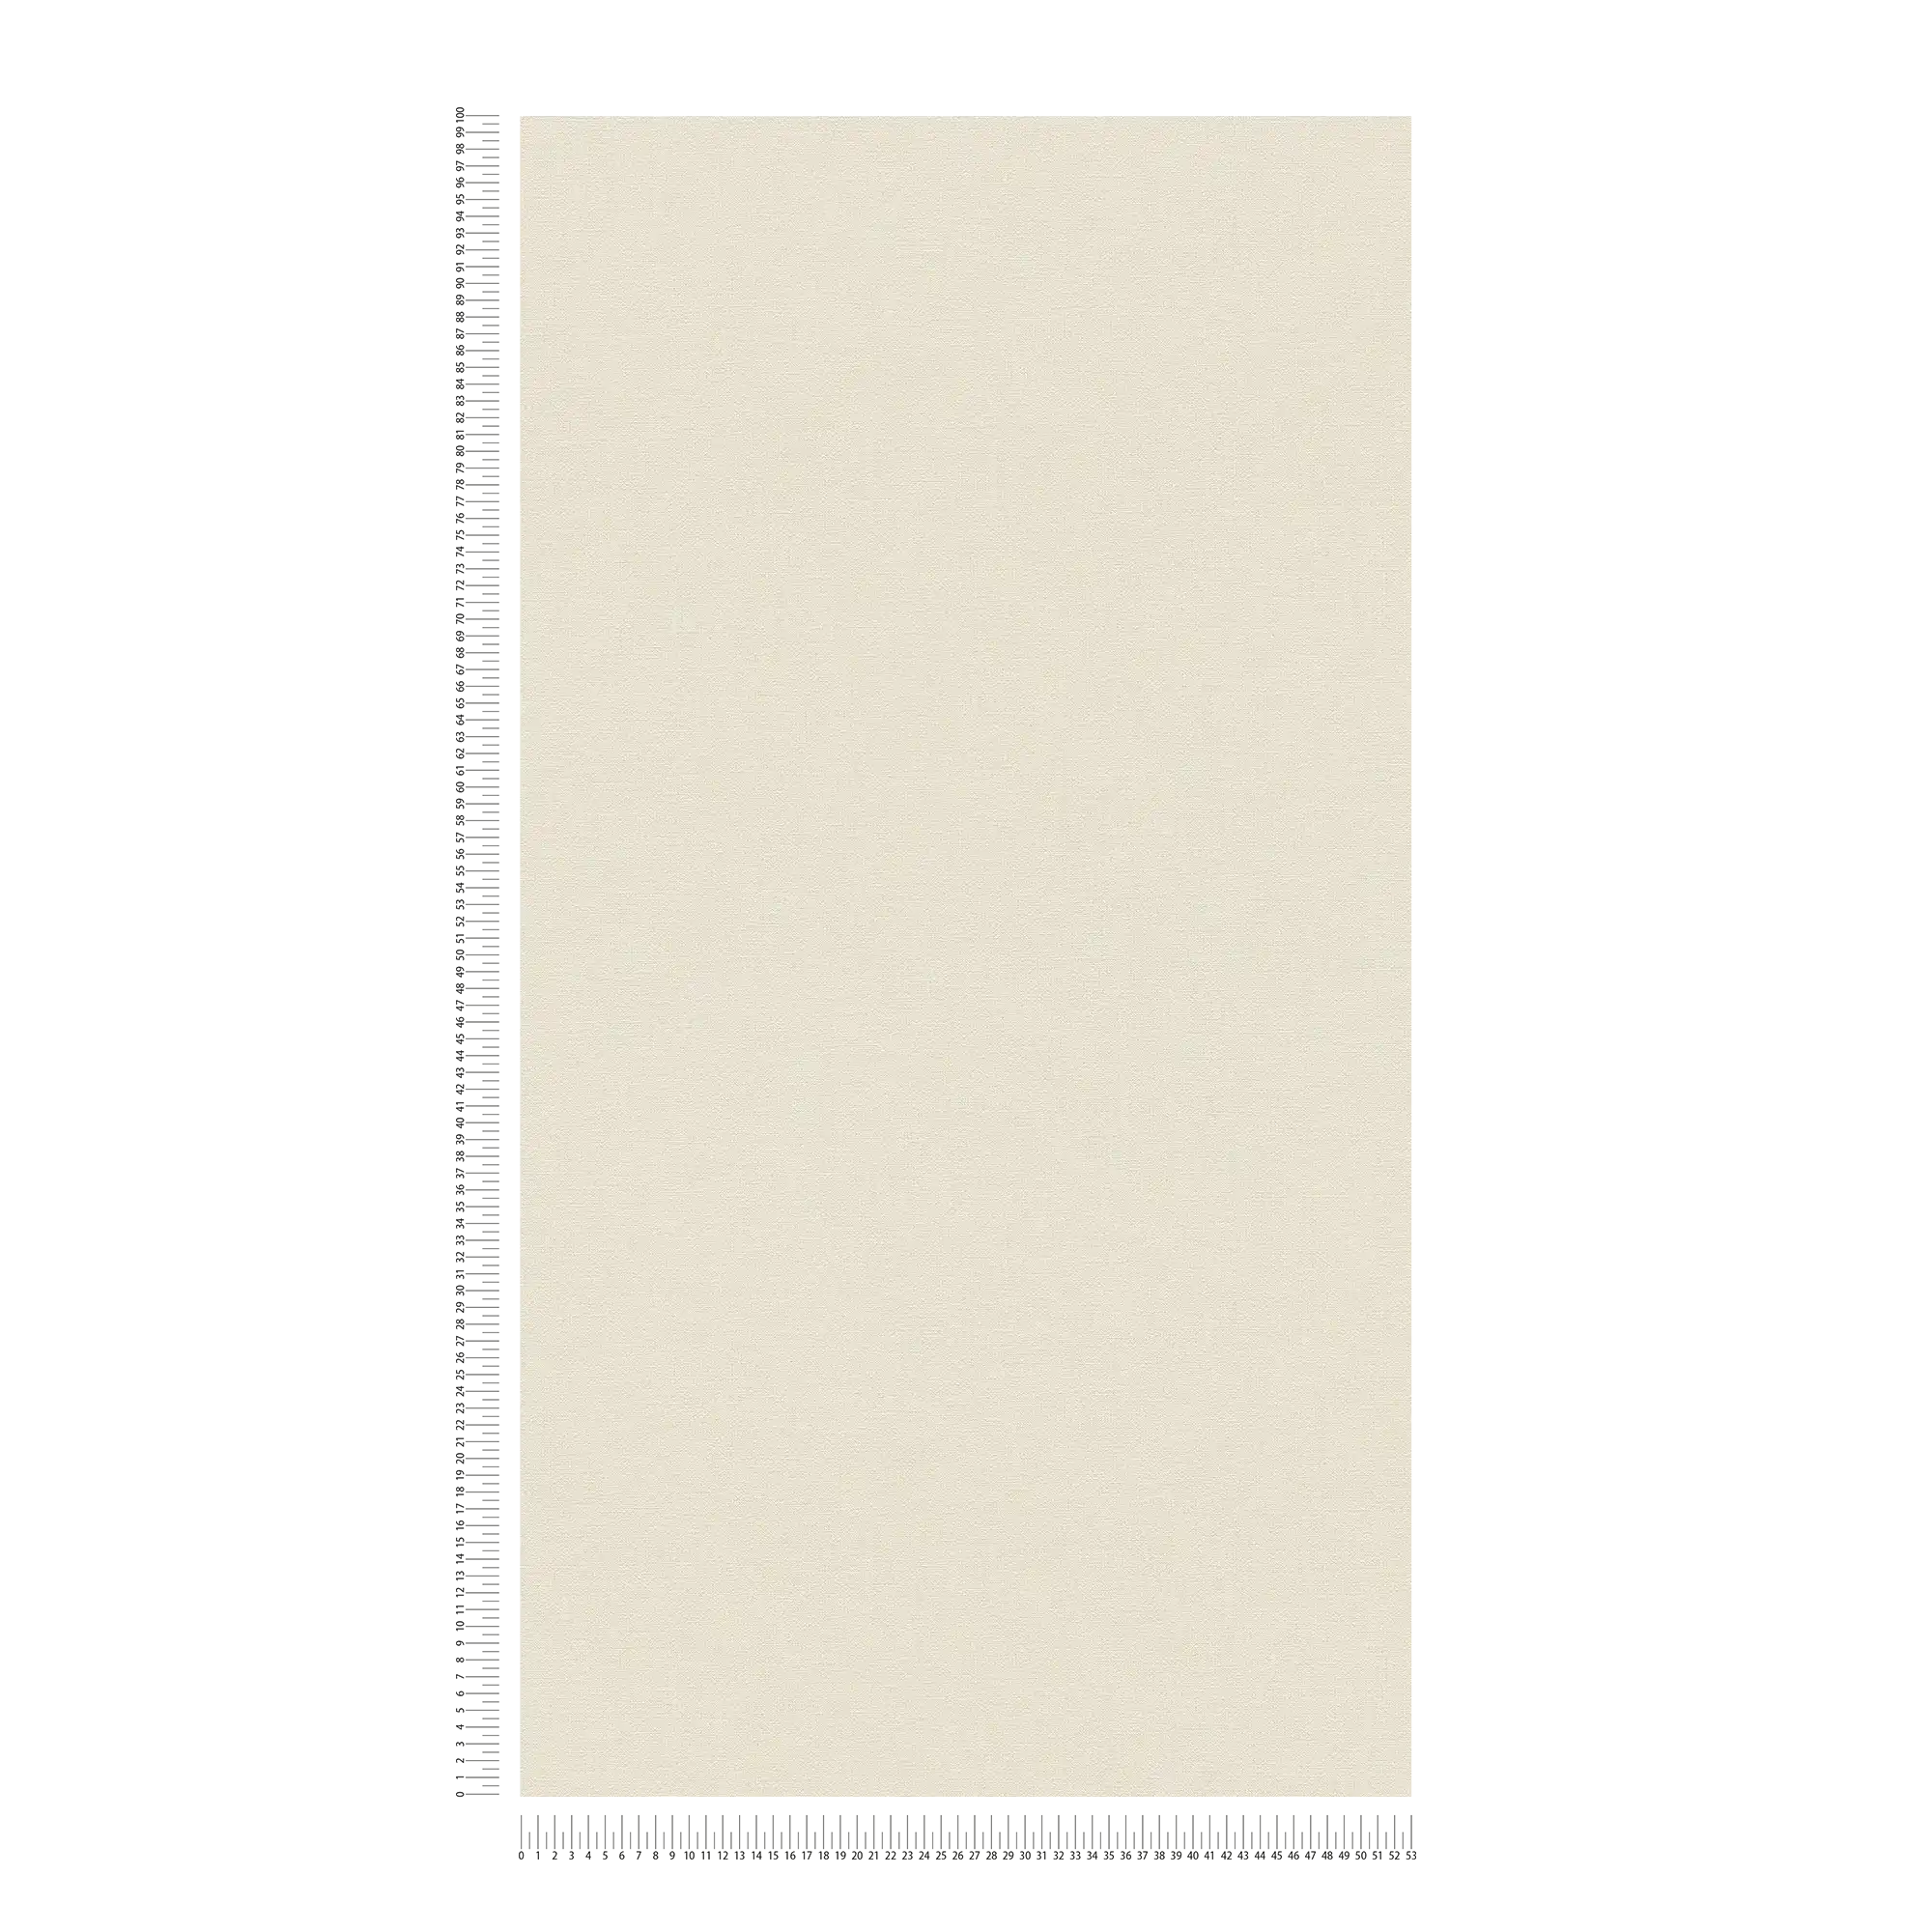             PVC-vrij vliesbehang met linnenlook - beige, wit
        